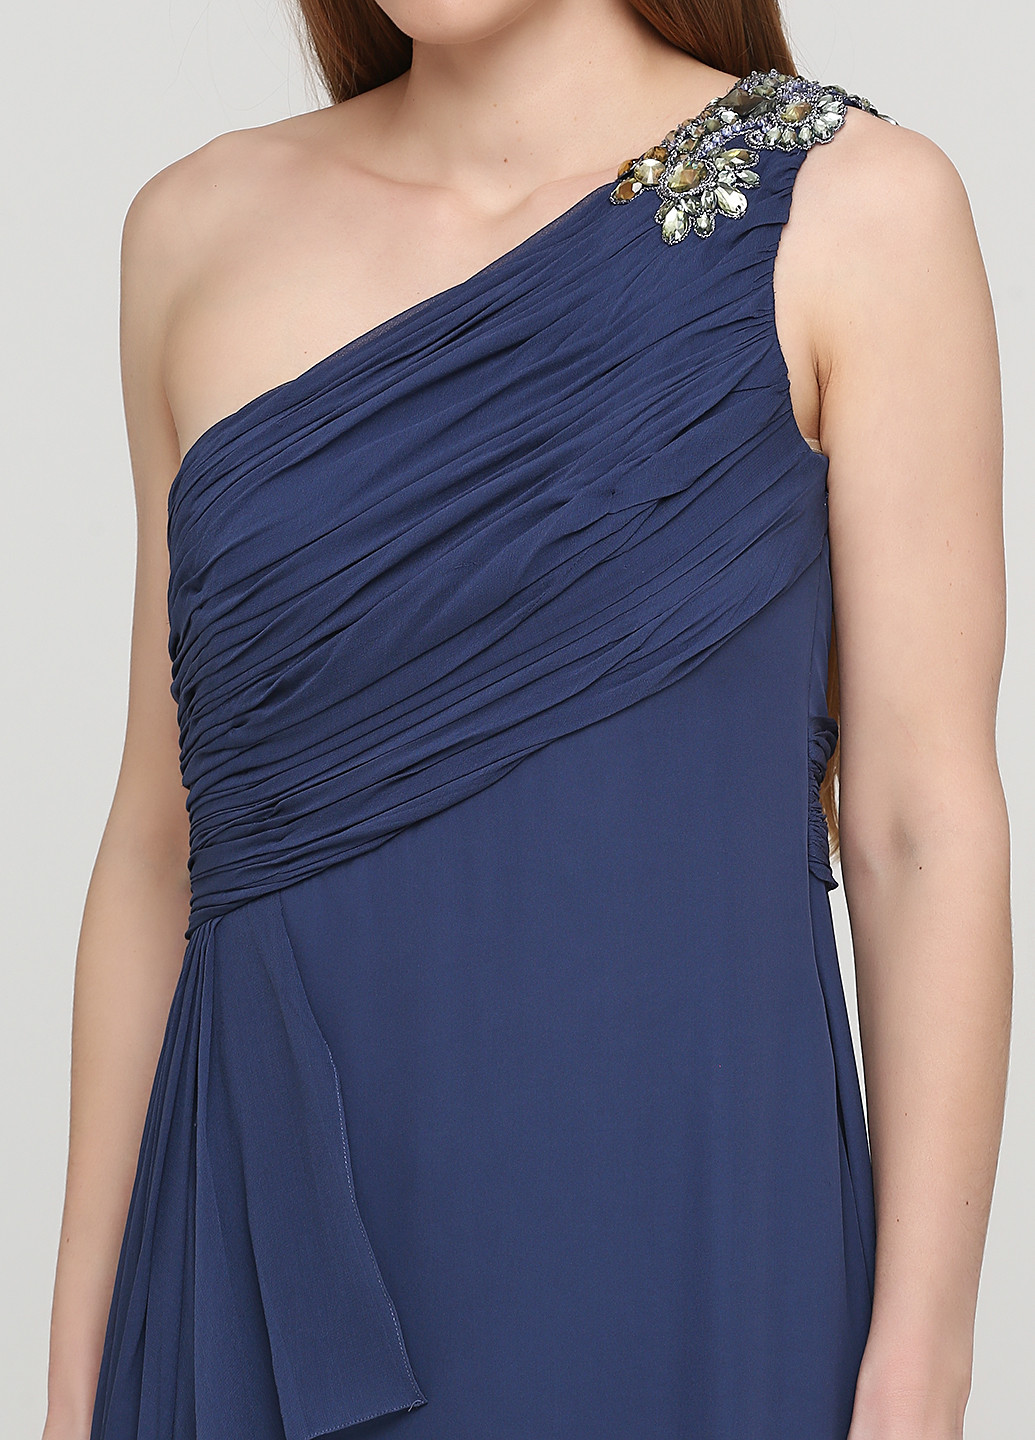 Сіро-синя вечірня сукня на одне плече Marchesa Notte однотонна